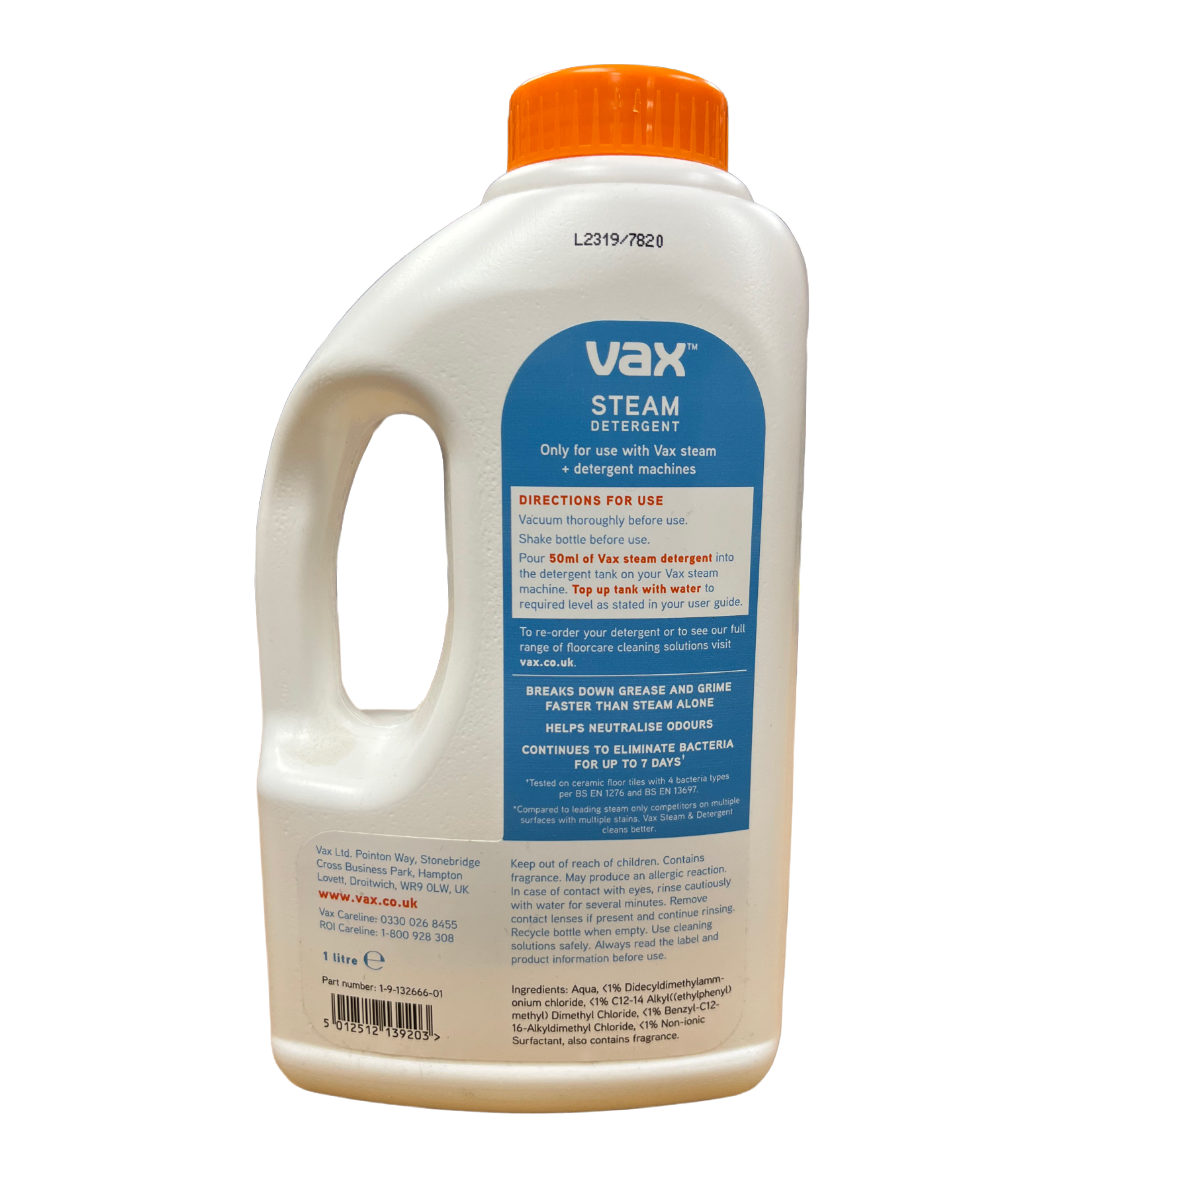 Vax Steam Detergent Citrus Burst Usage Instructions